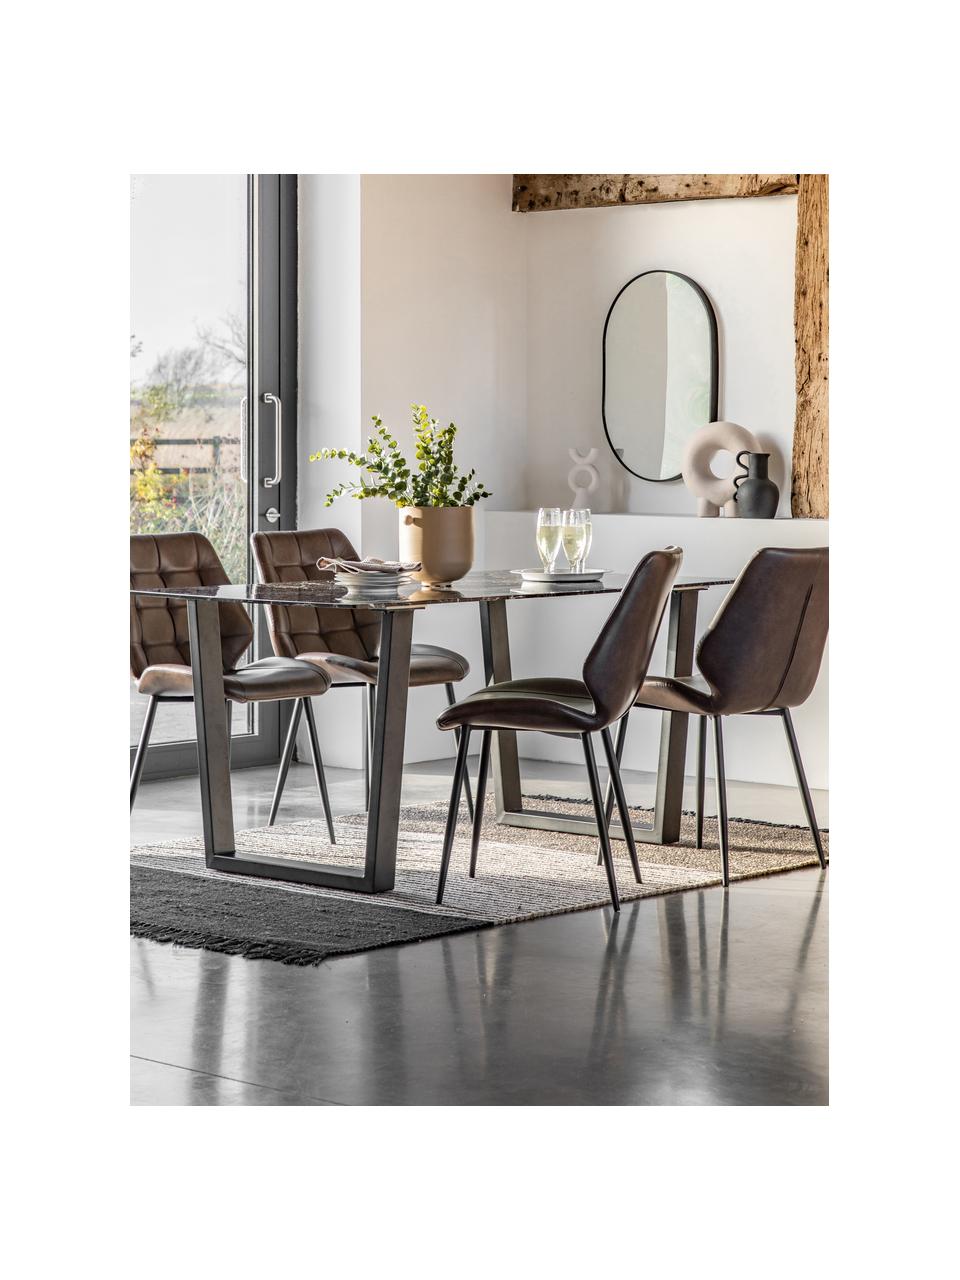 Table avec plateau look marbre Davidson, 160 x 90 cm, Look marbre noir, pieds noir, larg. 160 x prof. 90 cm